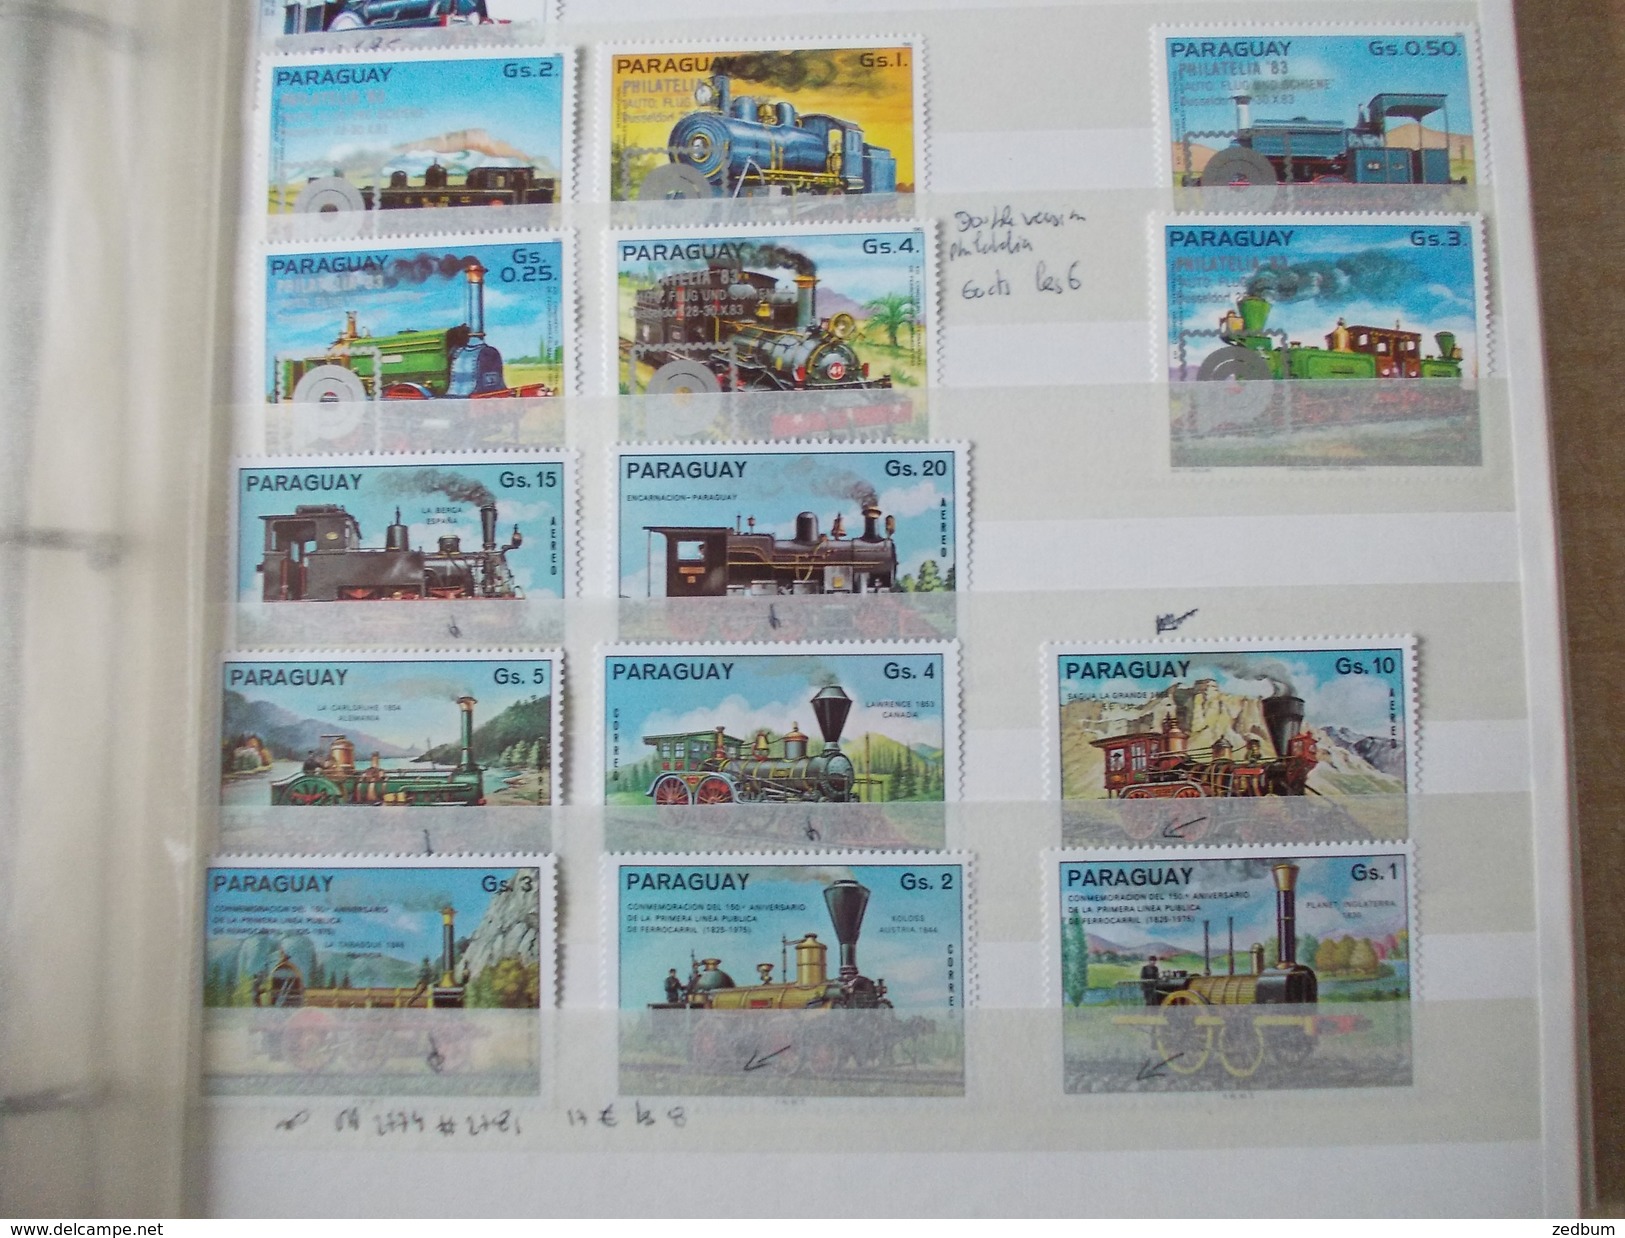 ALBUM 8 collection de timbres avec pour thème le chemin de fer train de tout pays valeur 247.50 &euro;